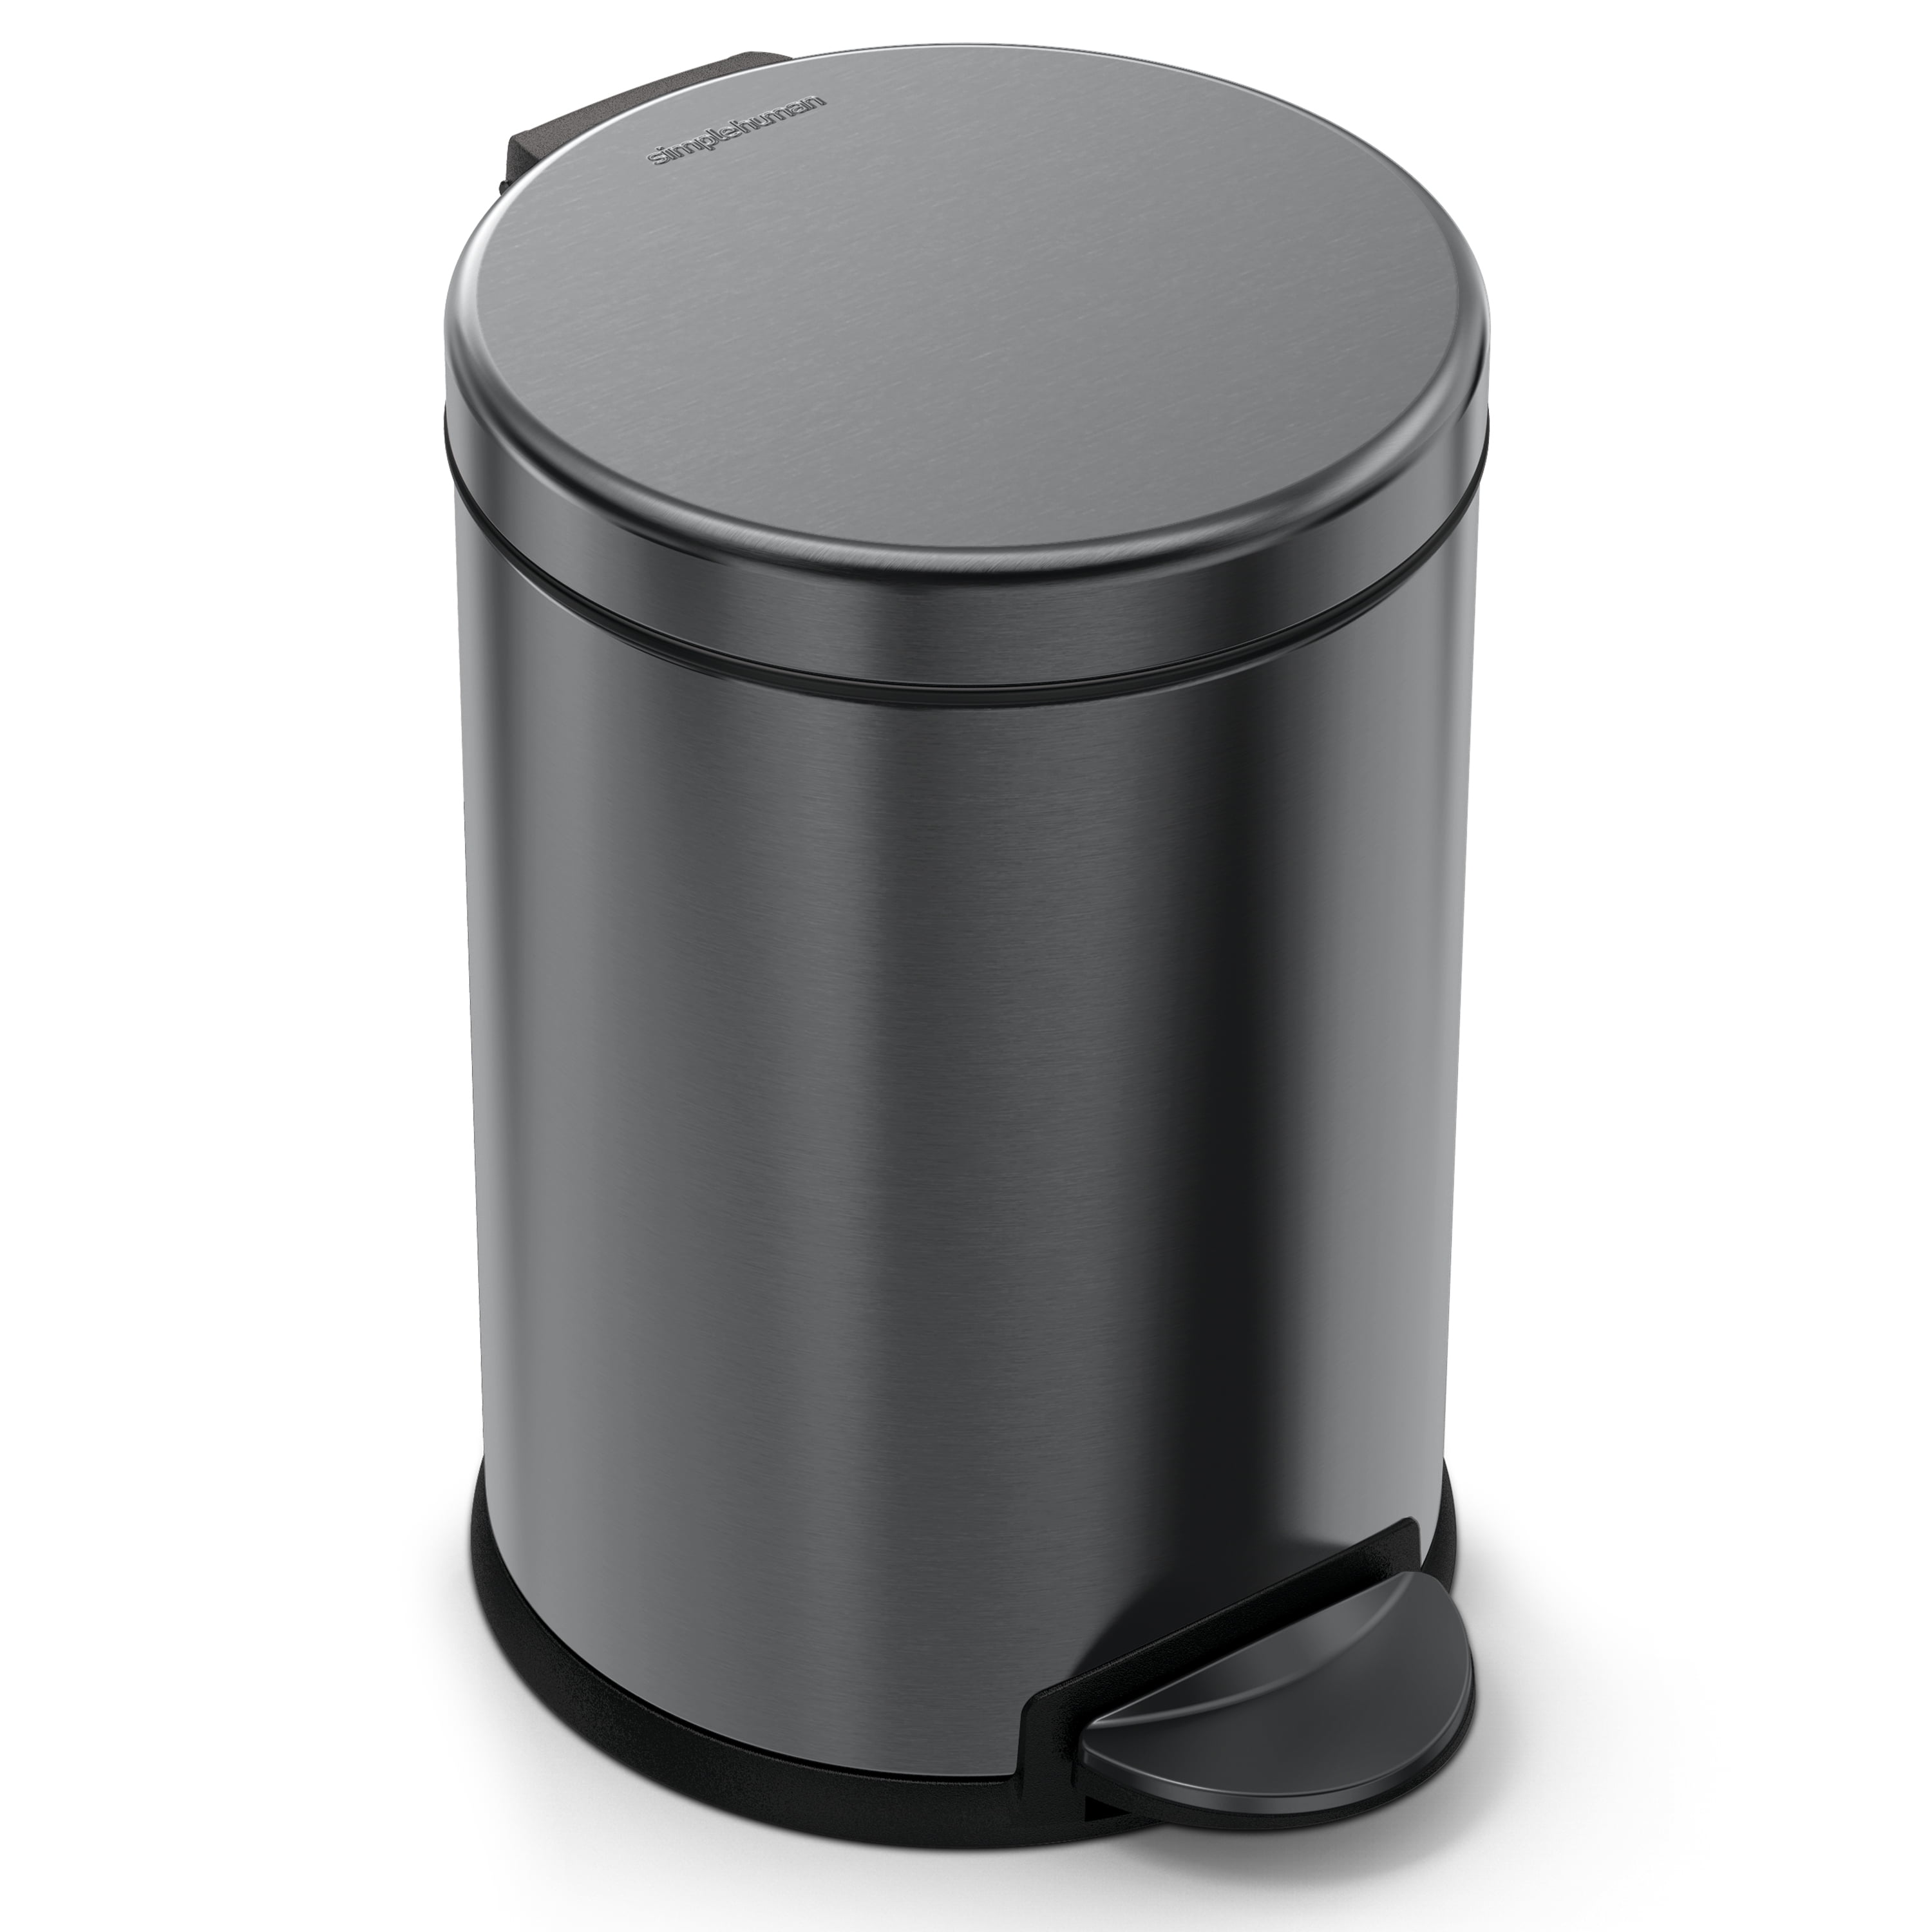 simplehuman Mini Round Steel Trash Can, 7-3/8H x 5W x 5D, 1.6 Qt, Black